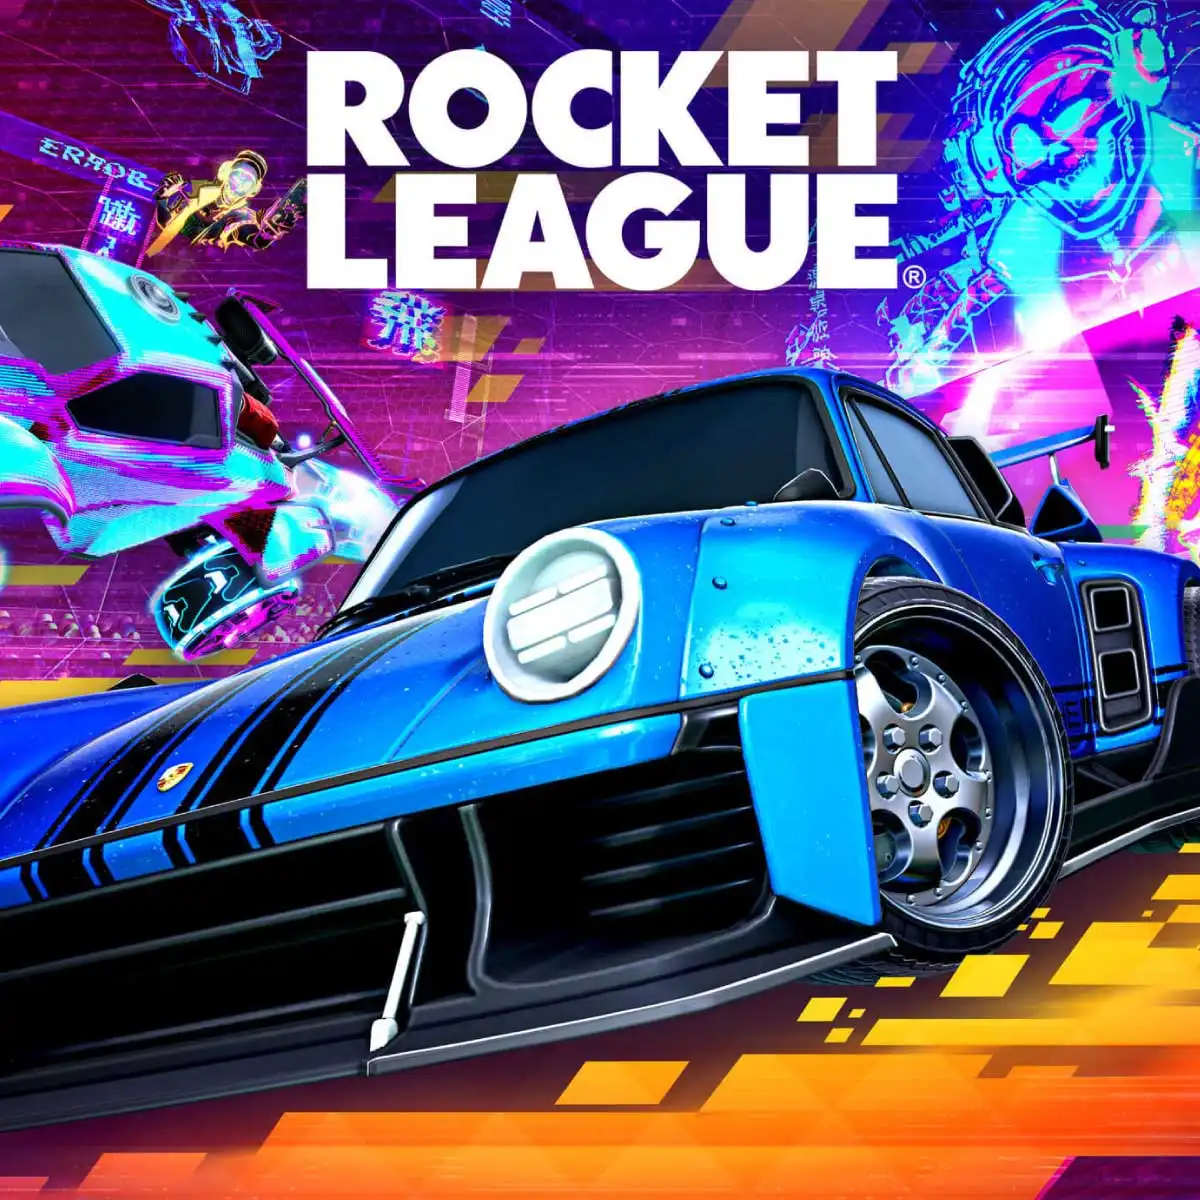 En İyi E-Spor Oyunları Rocket League